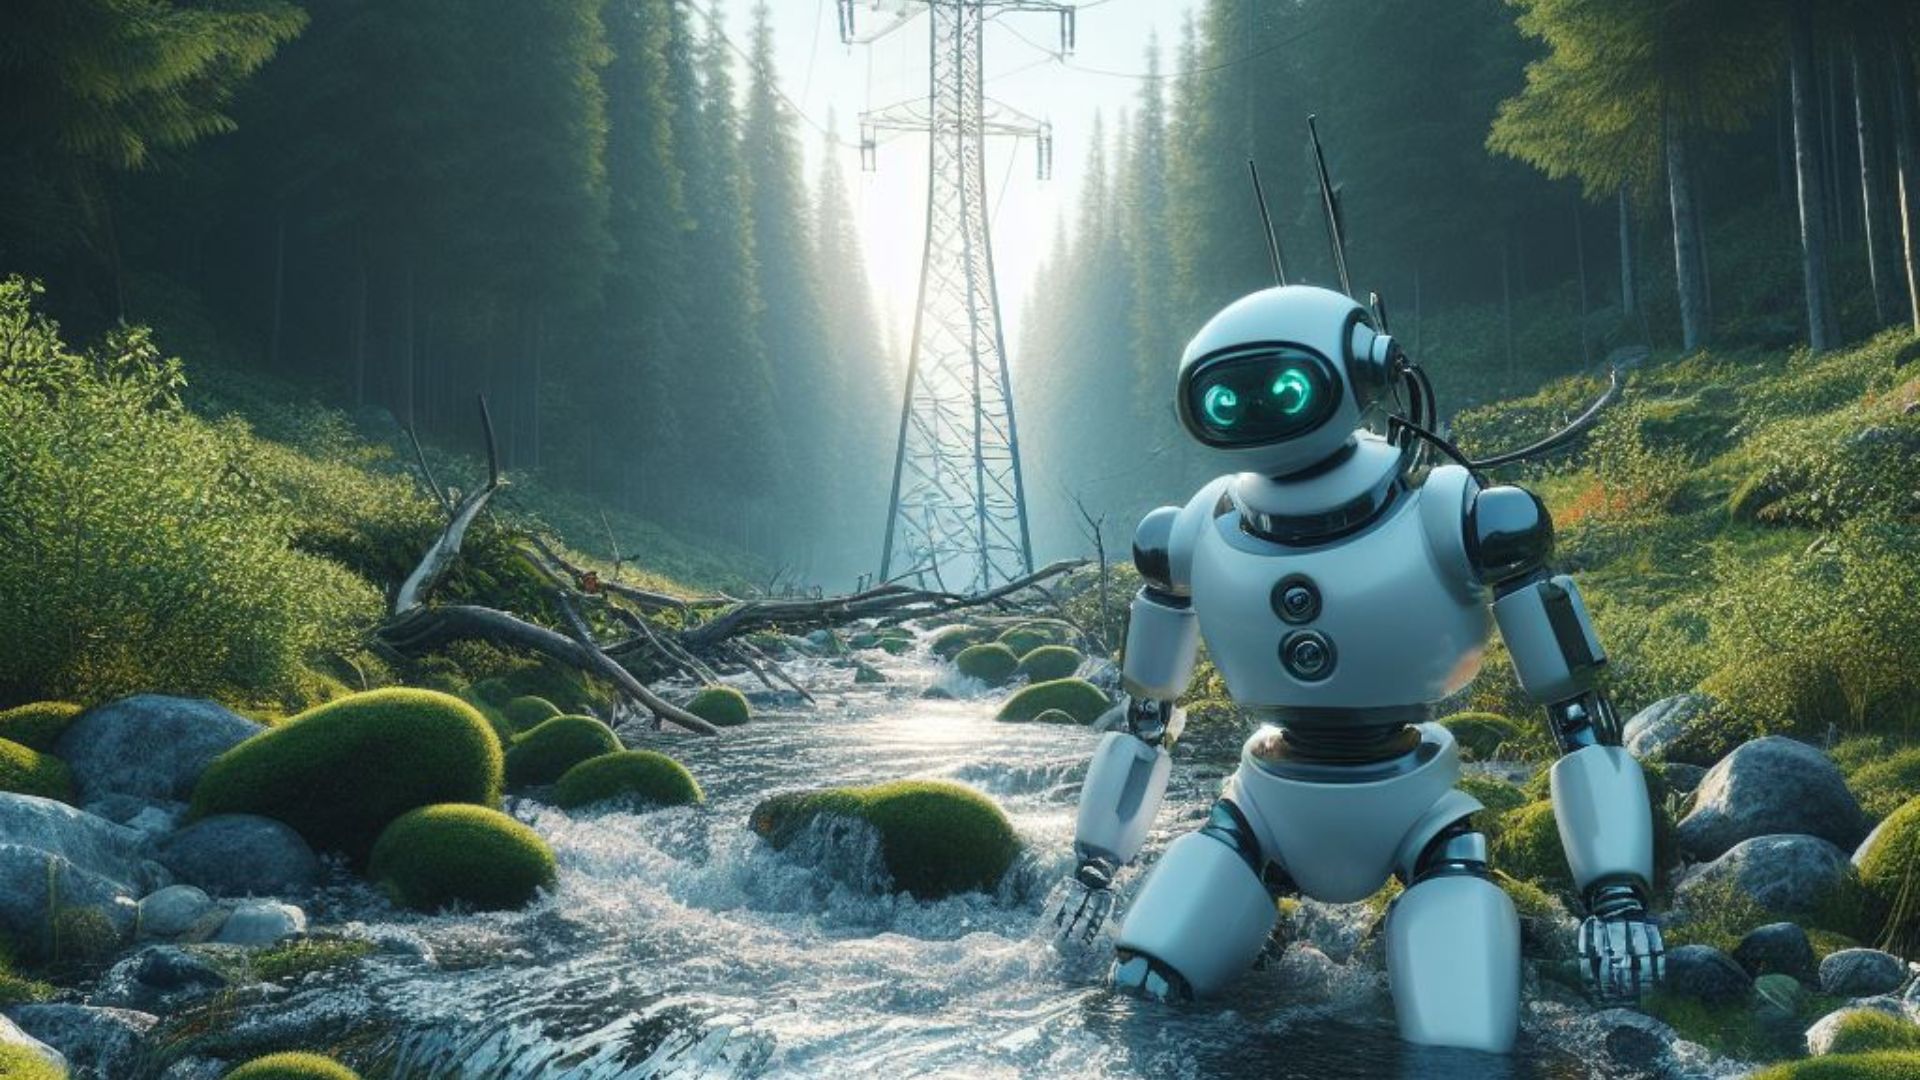 Robot en el bosque con un chorro de agua y líneas eléctricas.